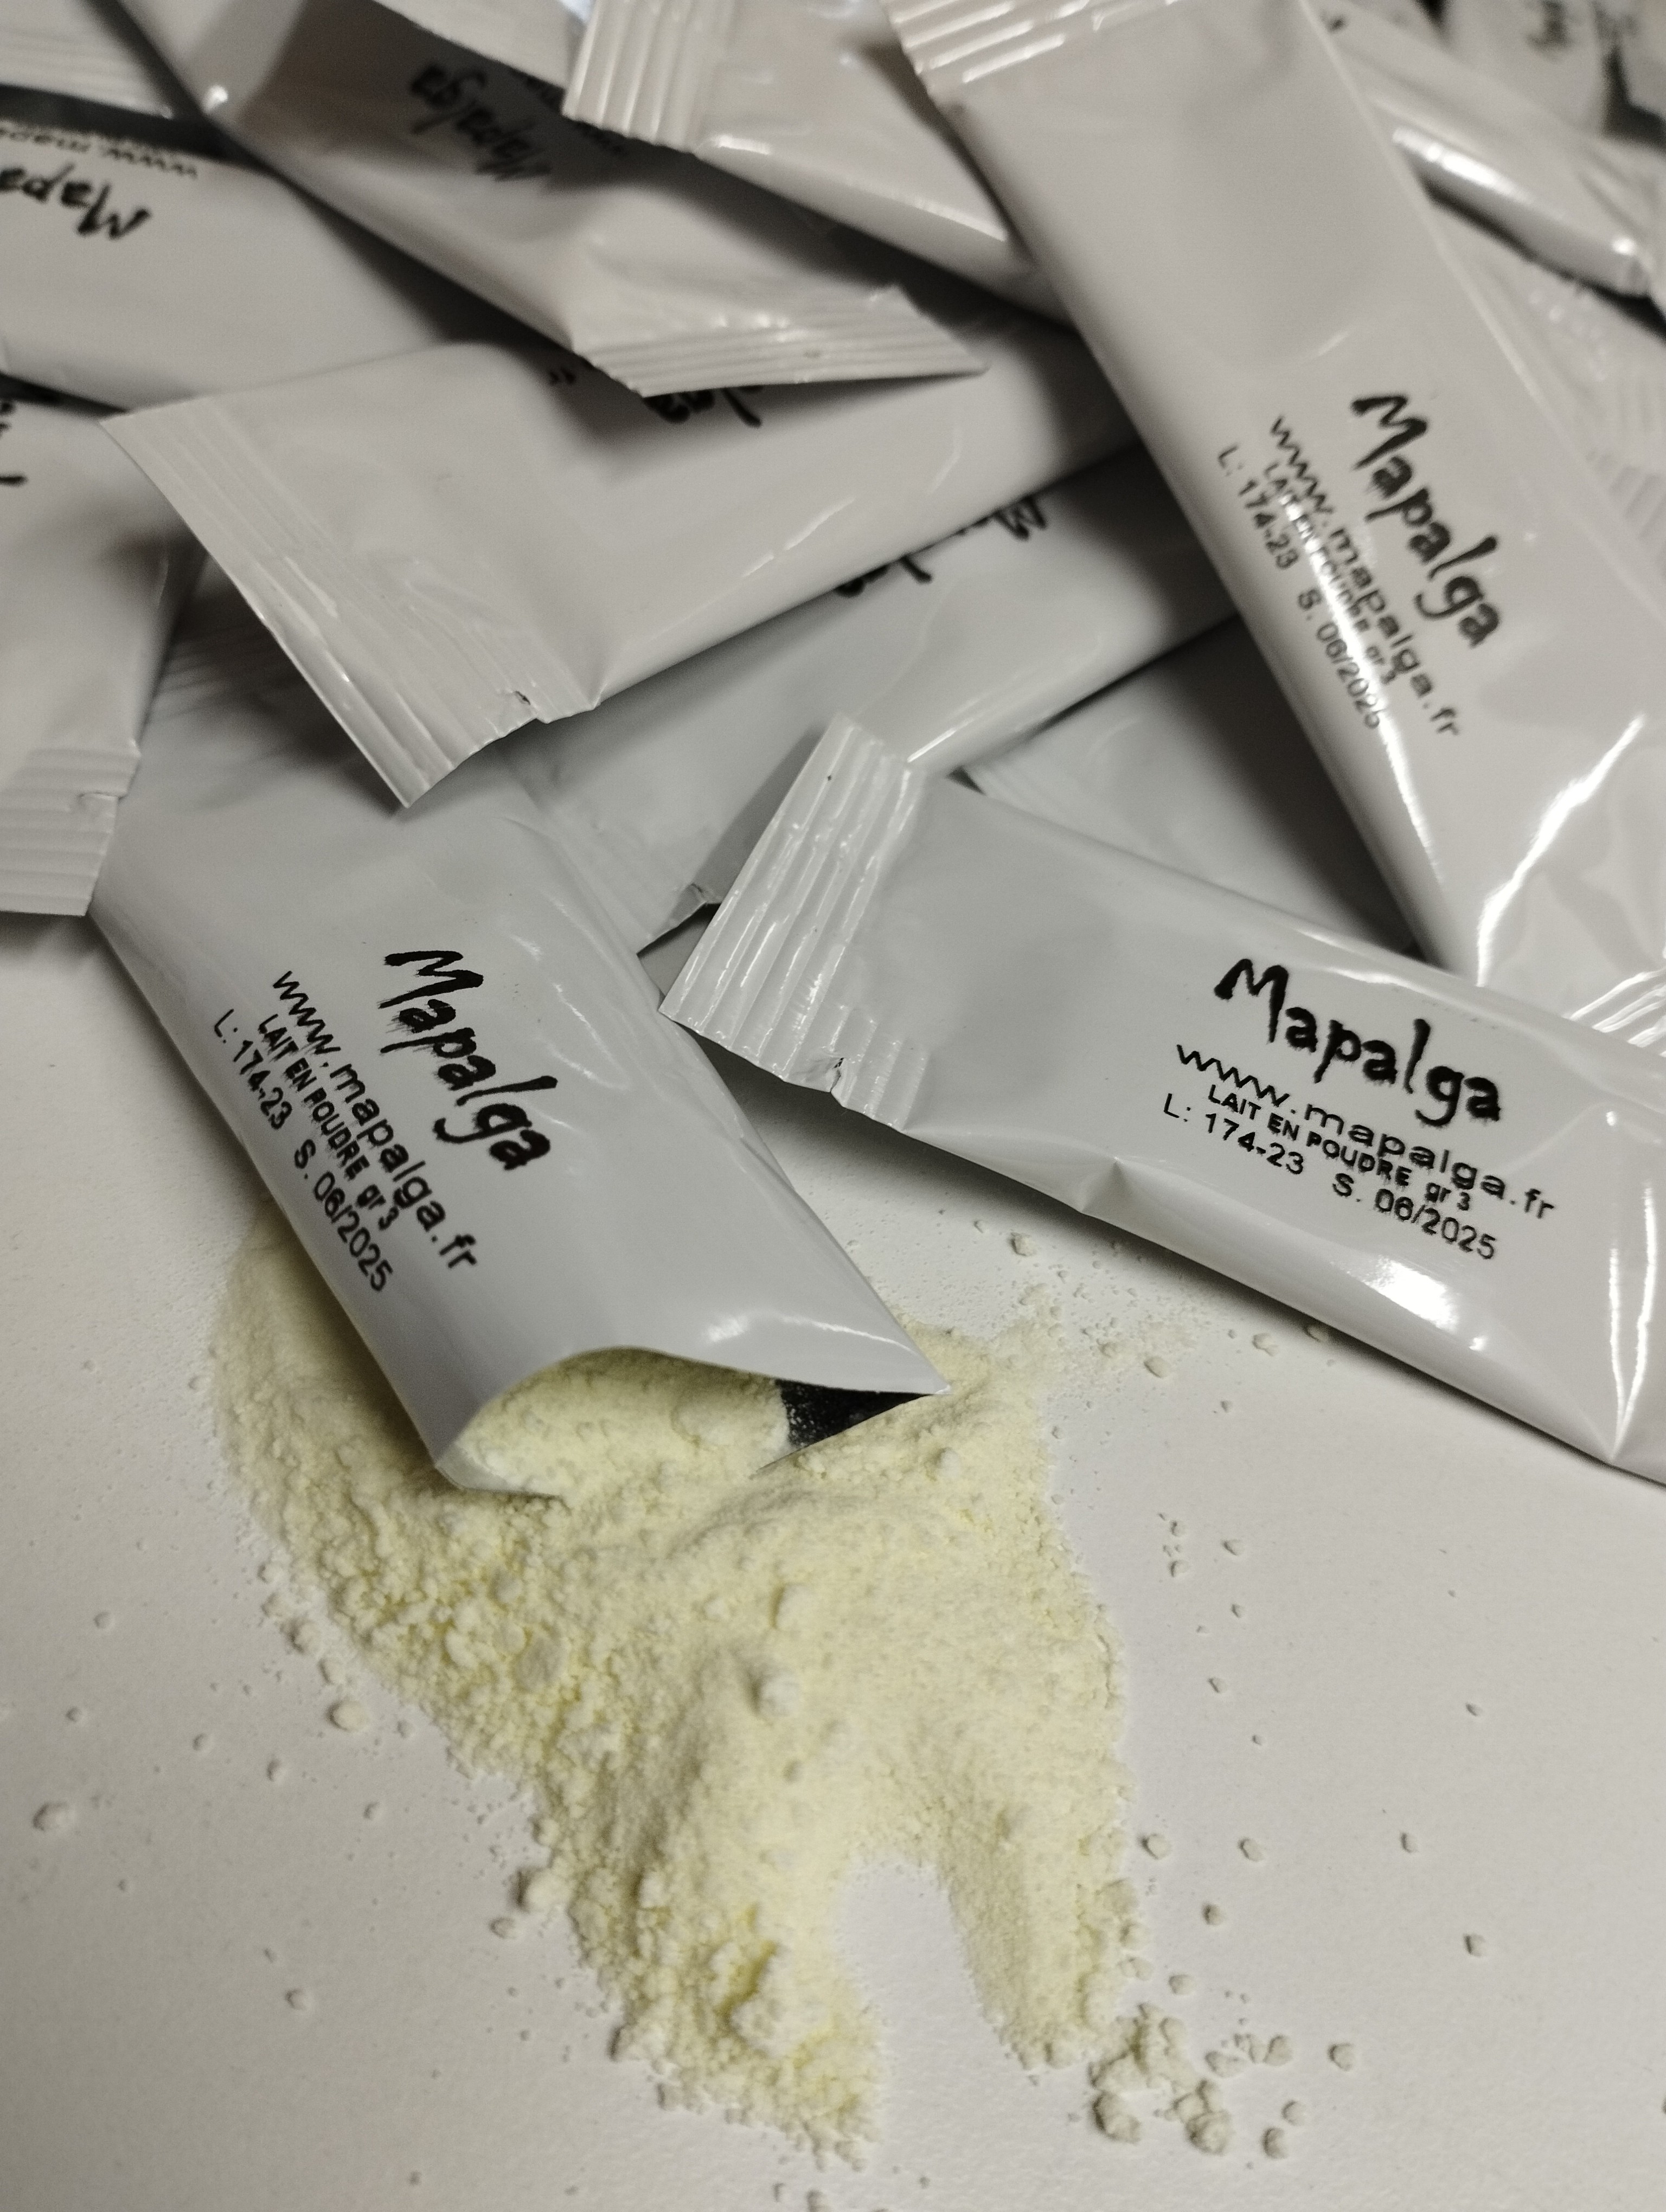 Lait en poudre en dosette individuelle de 3g - MAPALGA - MAPALGA CAFES